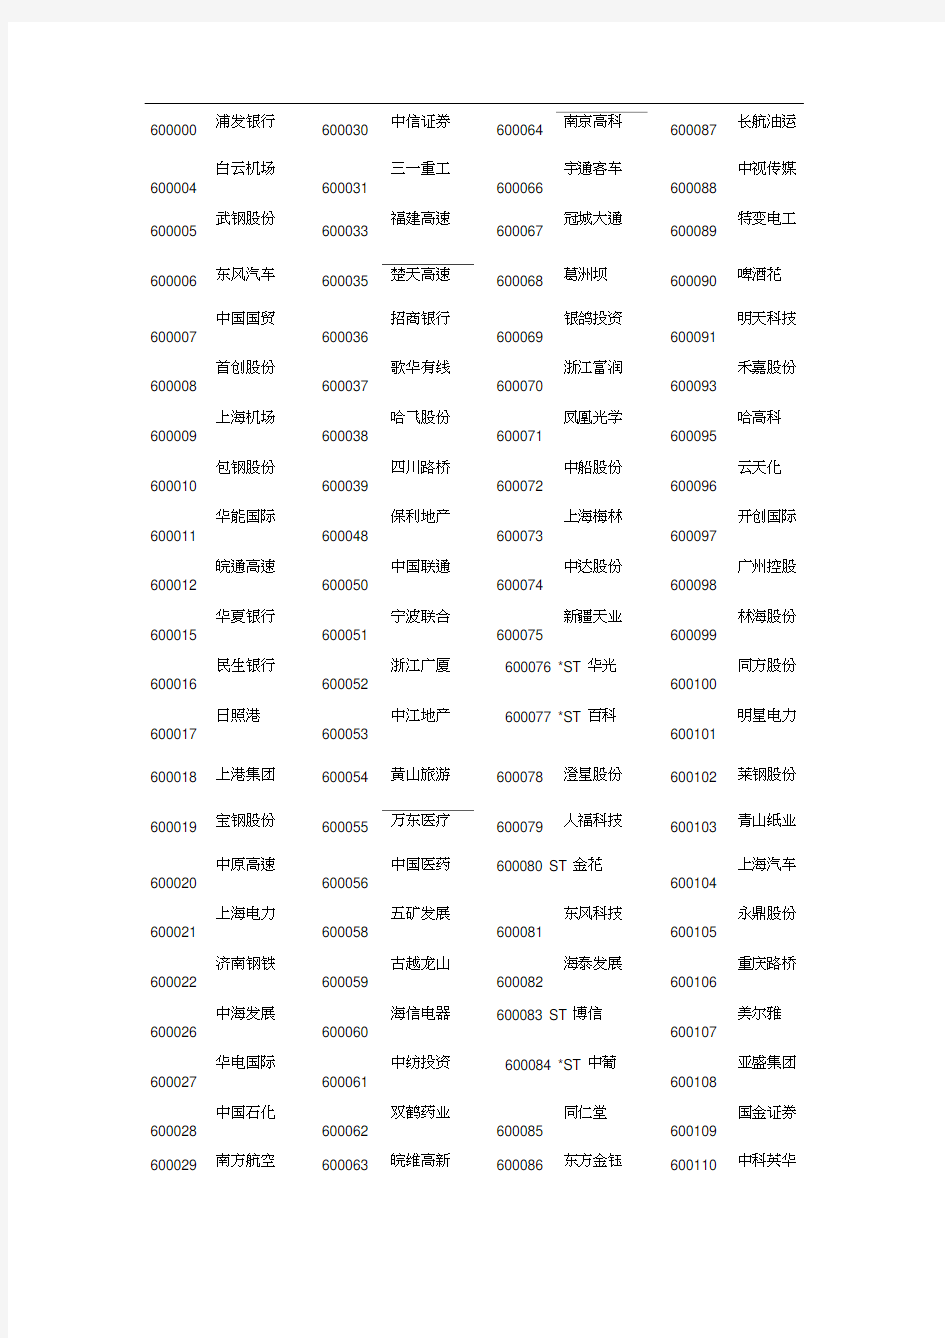 上海证券交易所股票代码及名称